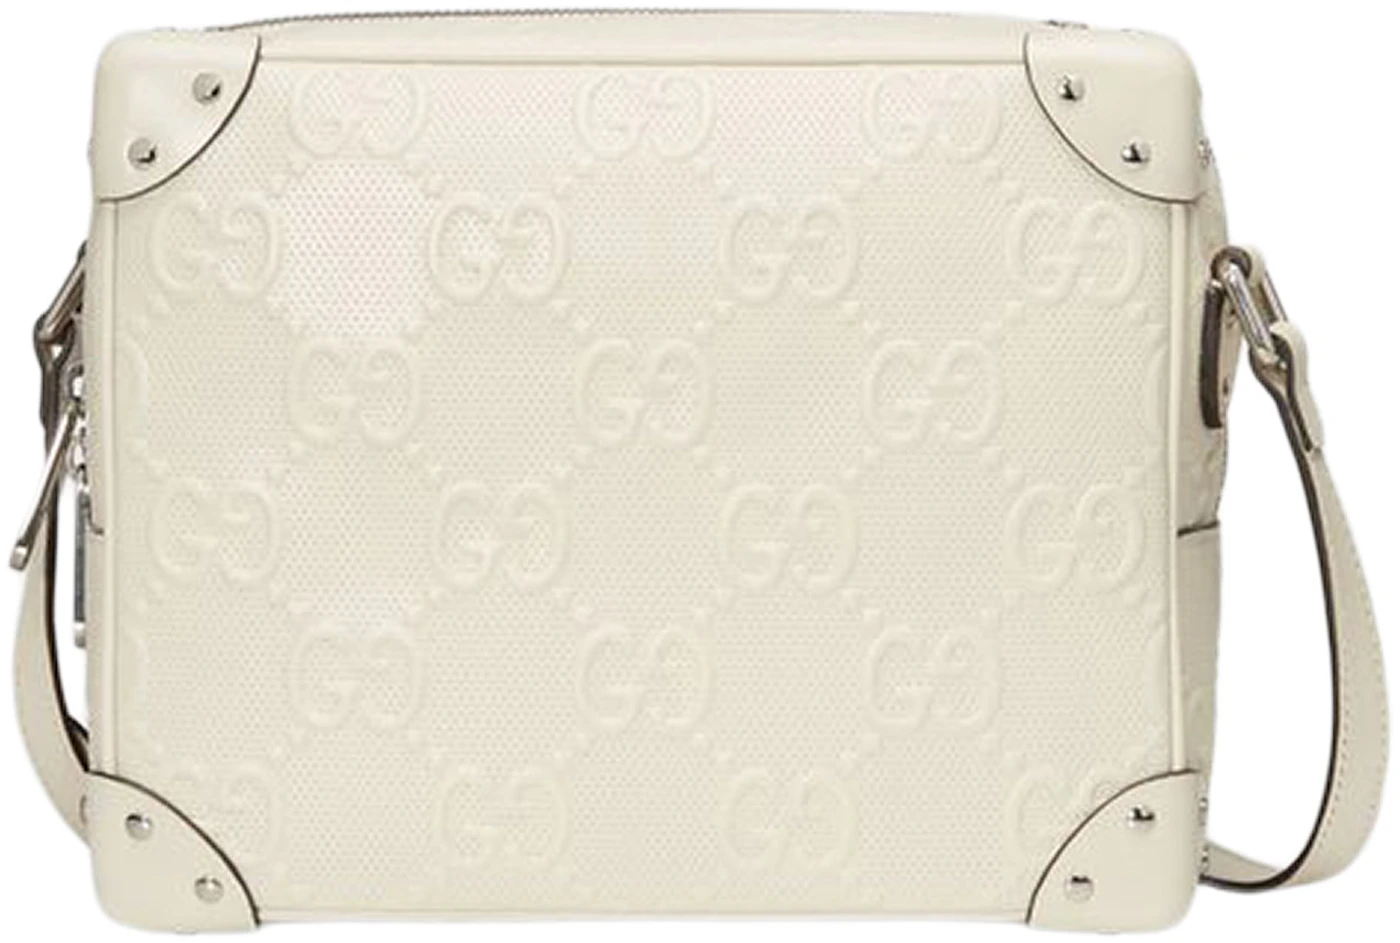 Gucci Off-White GG Embossed Shoulder Bag – BlackSkinny